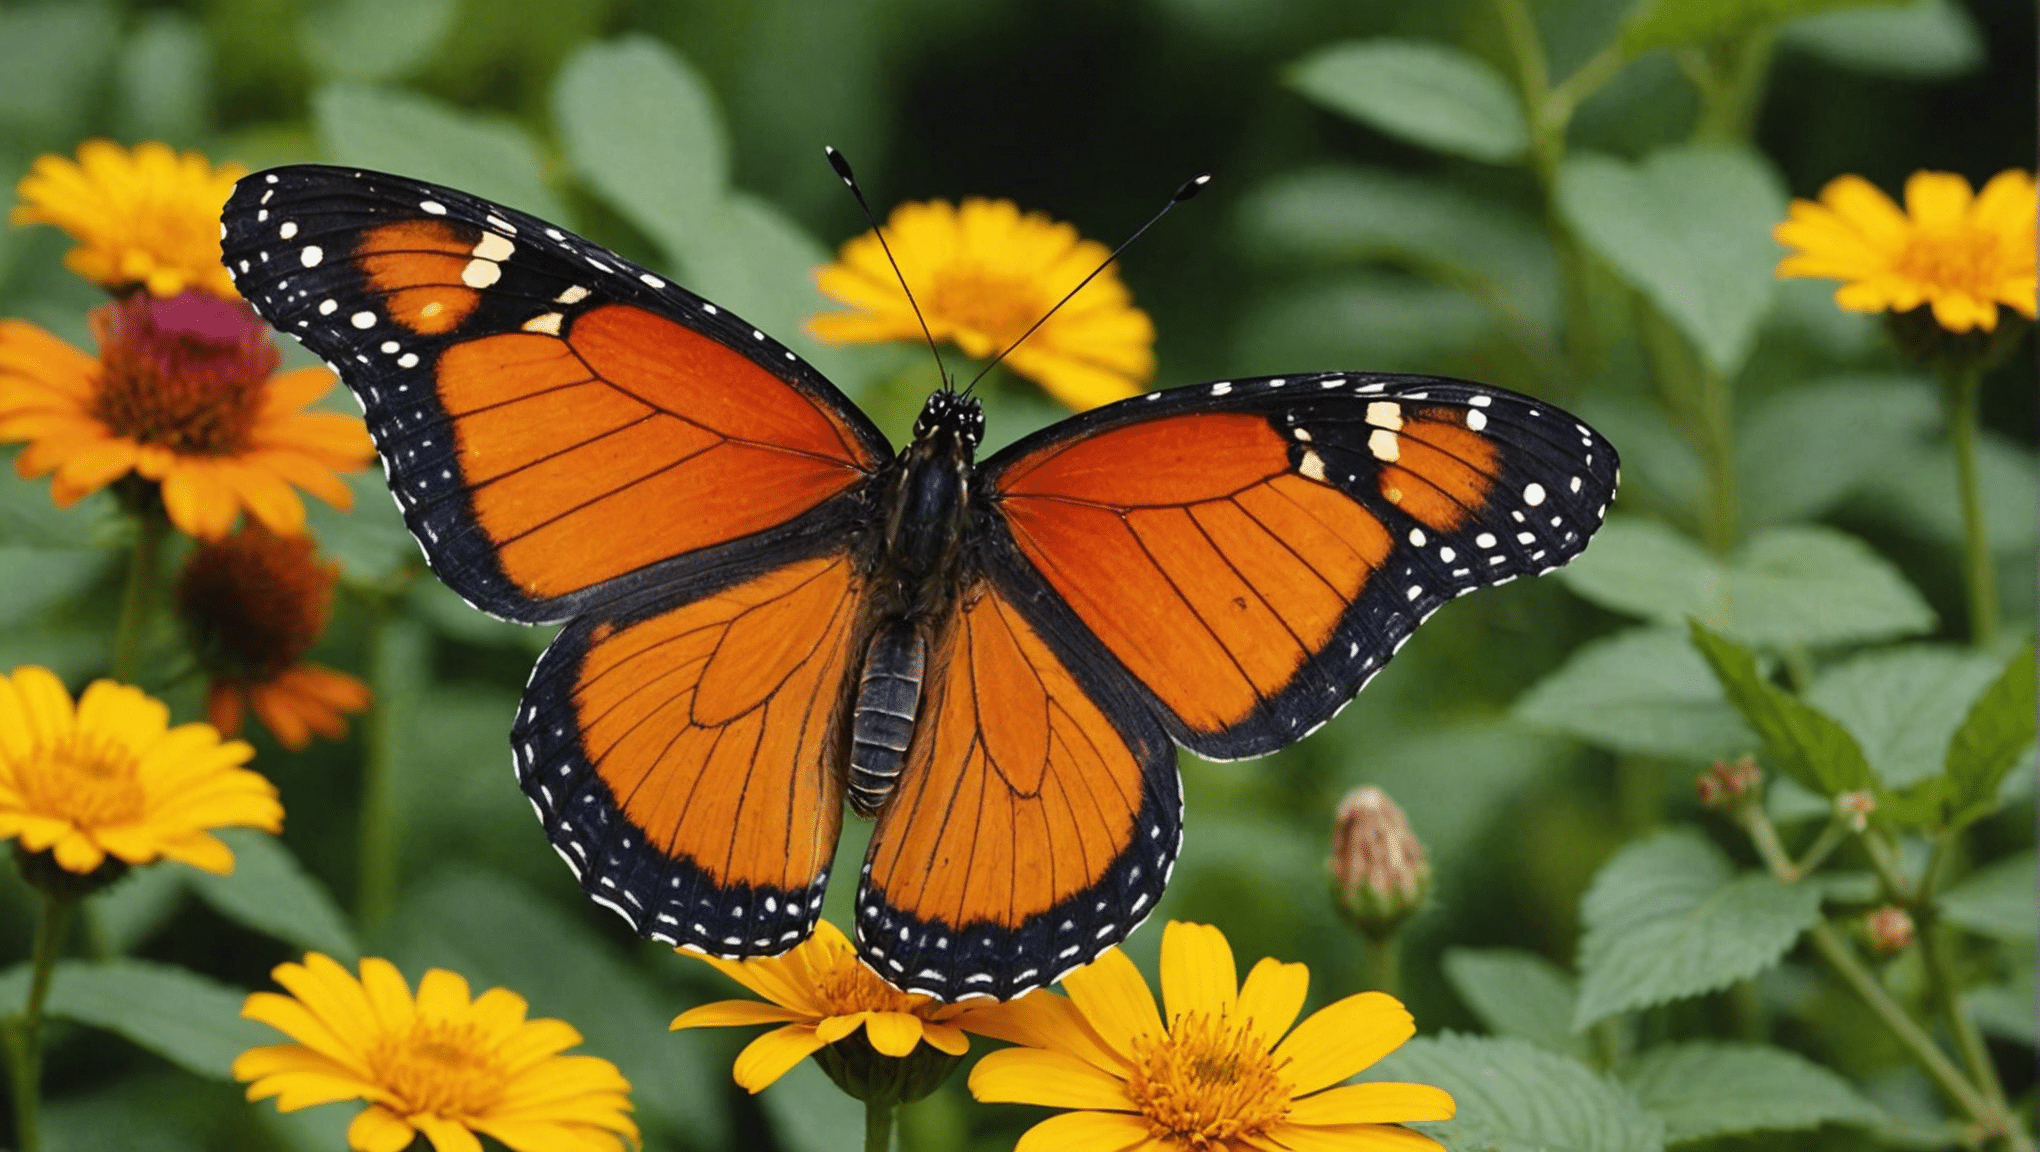 scopri fatti divertenti e affascinanti sulle farfalle con i nostri contenuti accattivanti.